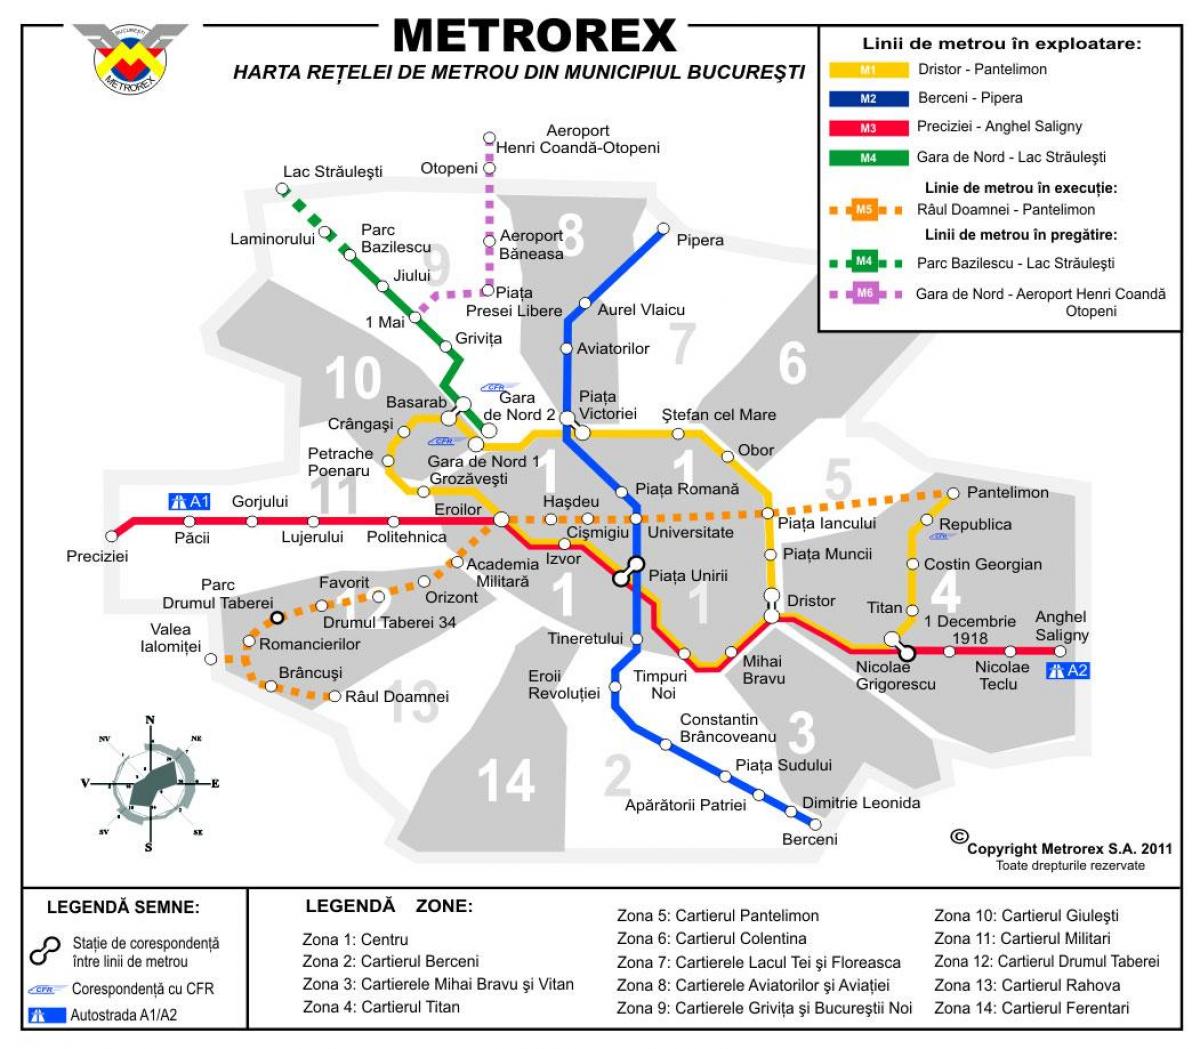 Mapa de metrorex 